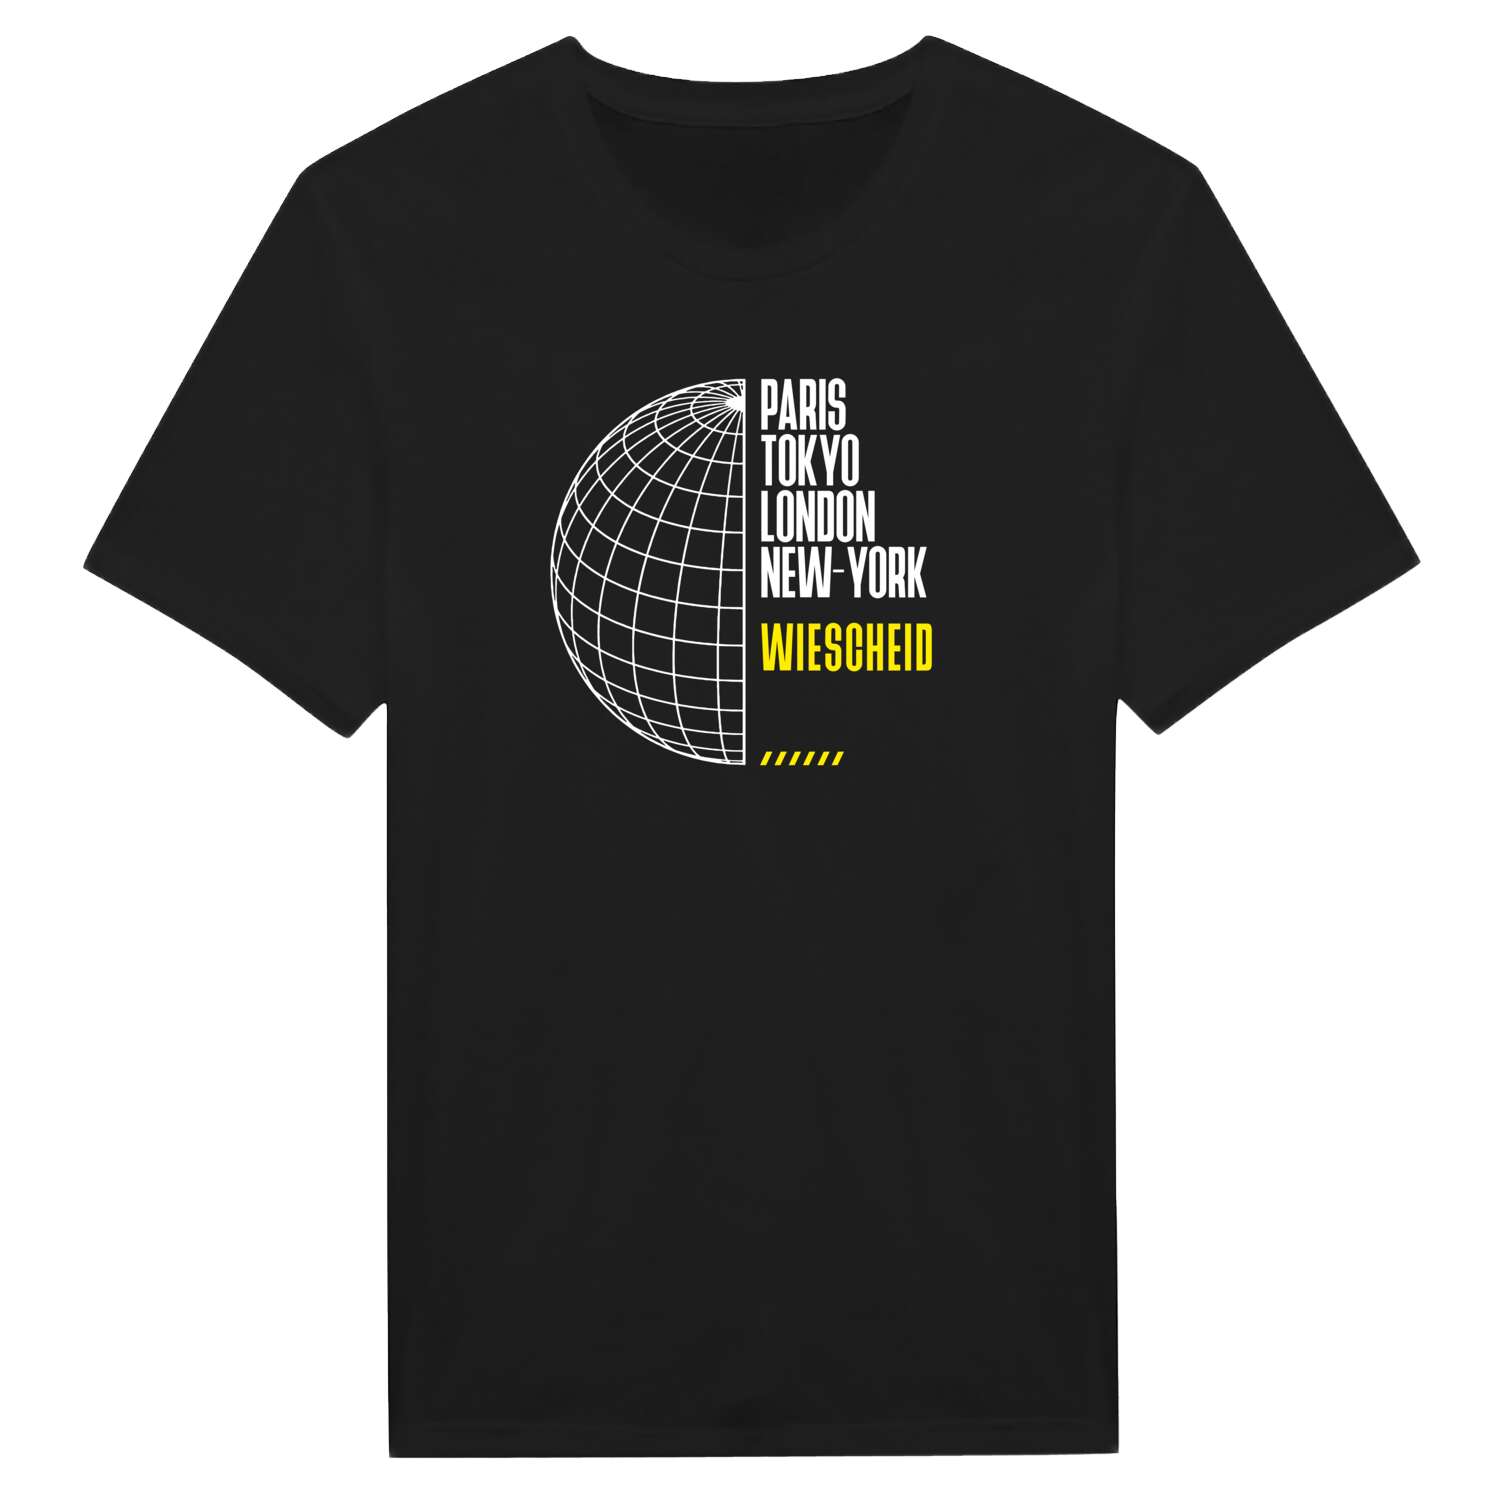 Wiescheid T-Shirt »Paris Tokyo London«